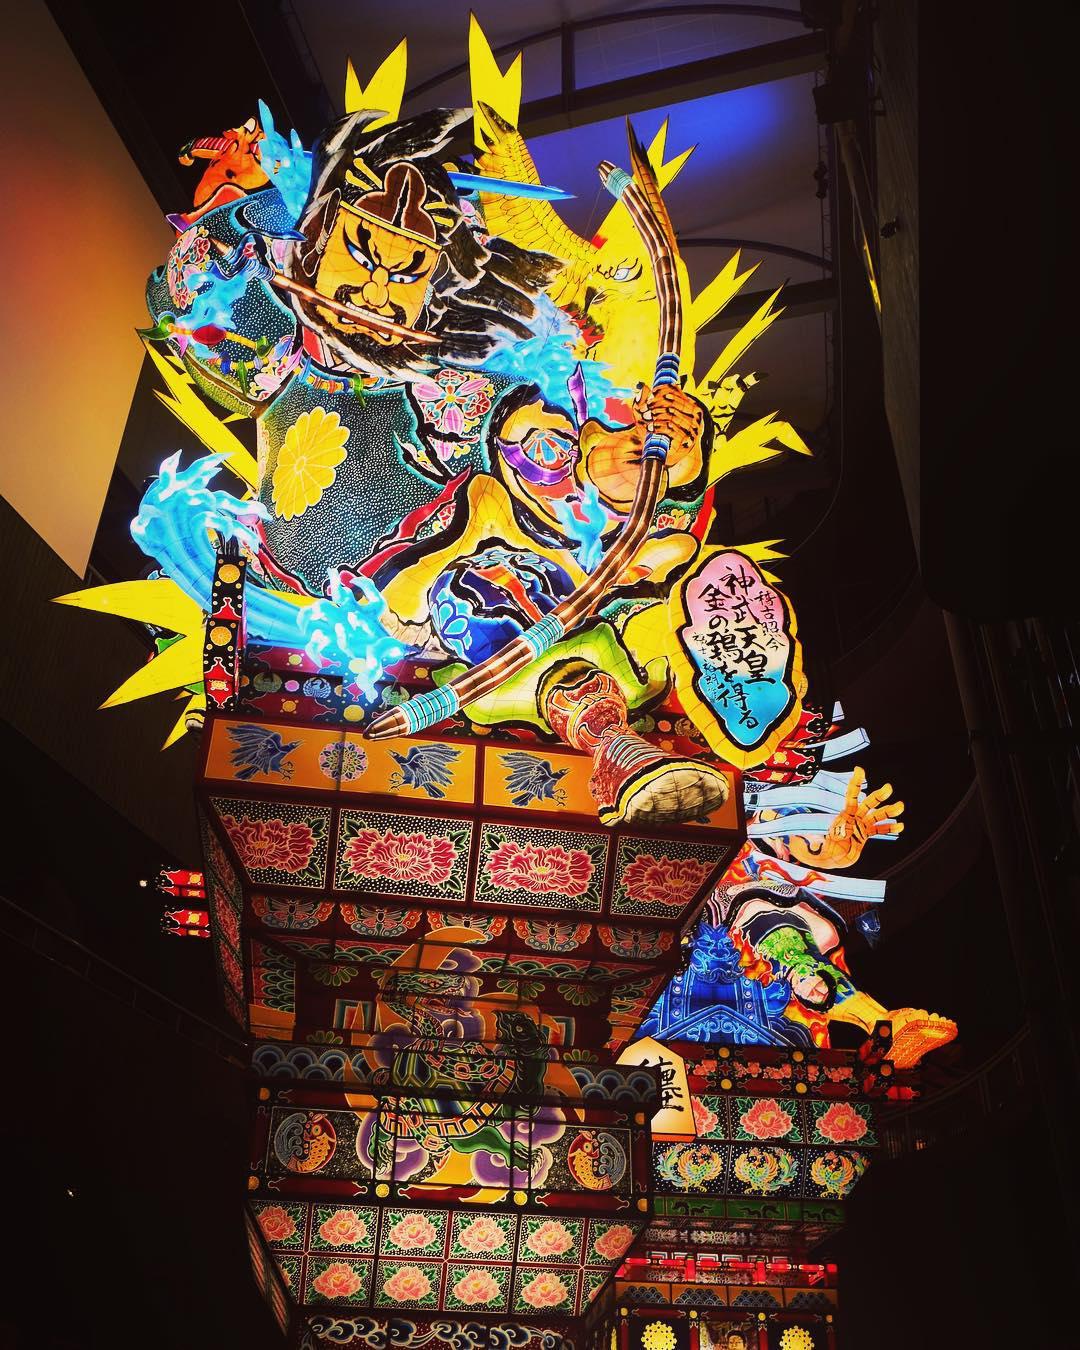 在狂欢中感受文化的传承  日本的传统灯笼节 立佞武多之馆是一个关于当地传统灯笼节的展览馆，我一向喜欢